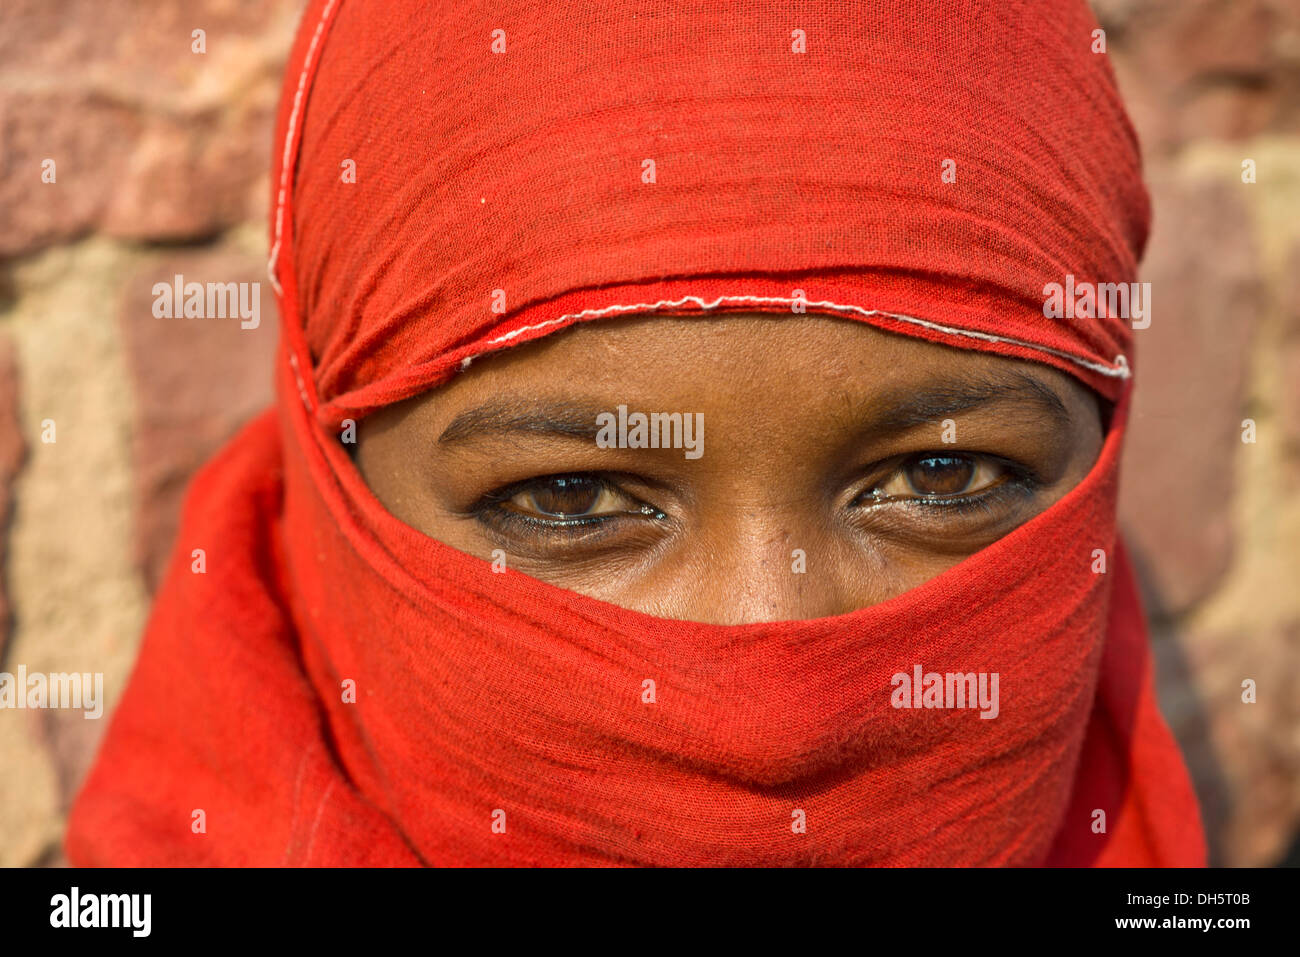 Giovane donna indiana con un velo di colore rosso, ritratto, Fatehpur Sikri, Uttar Pradesh, India Foto Stock